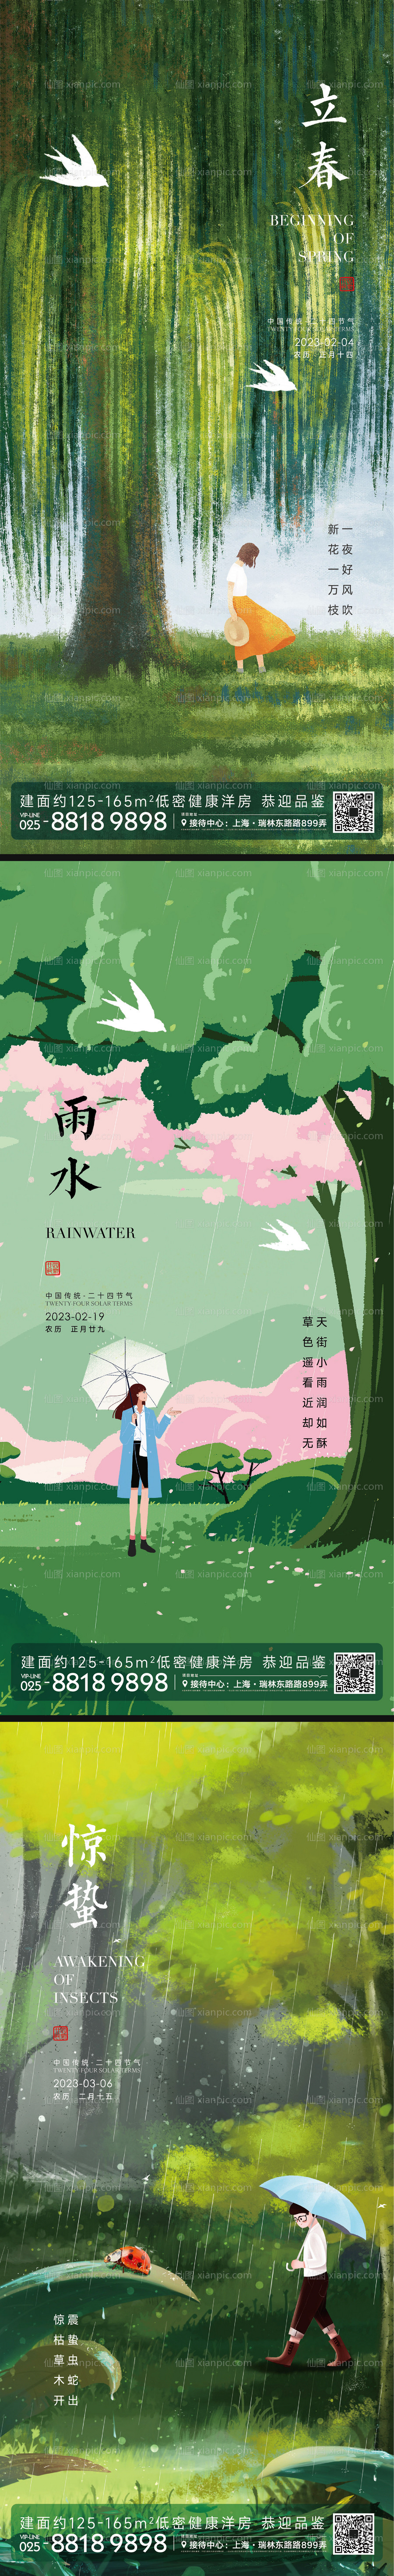 素材乐-雨水惊蛰立春节气插画海报